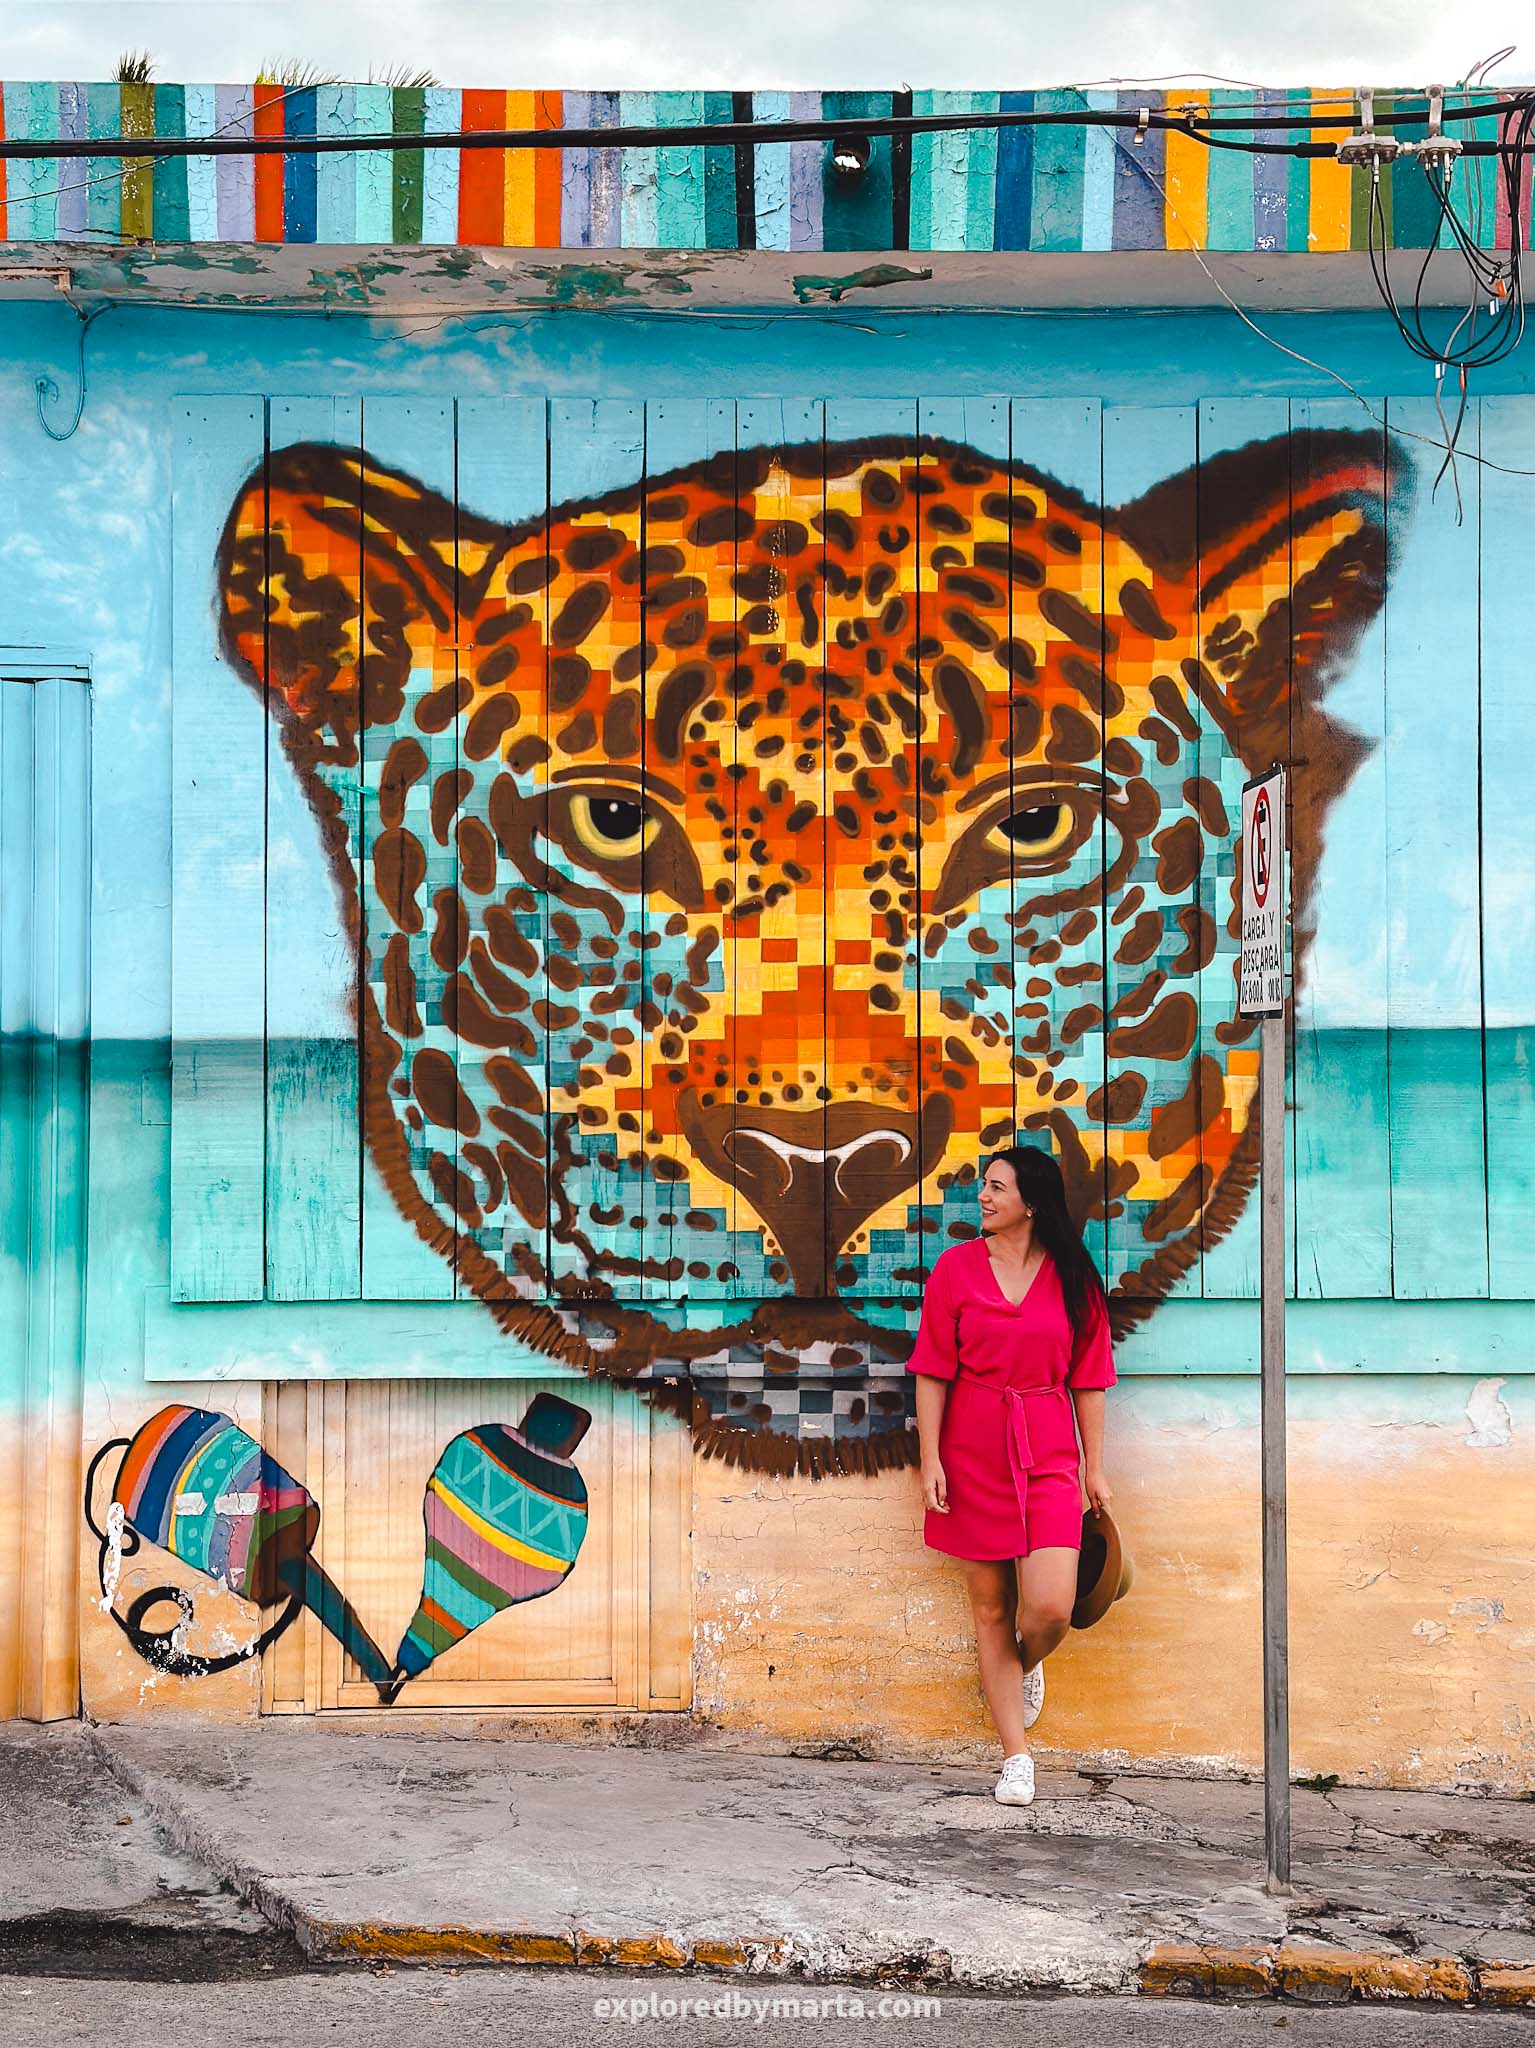 Cozumel, Mexico - best Instagram spots in Cozumel - street art murals